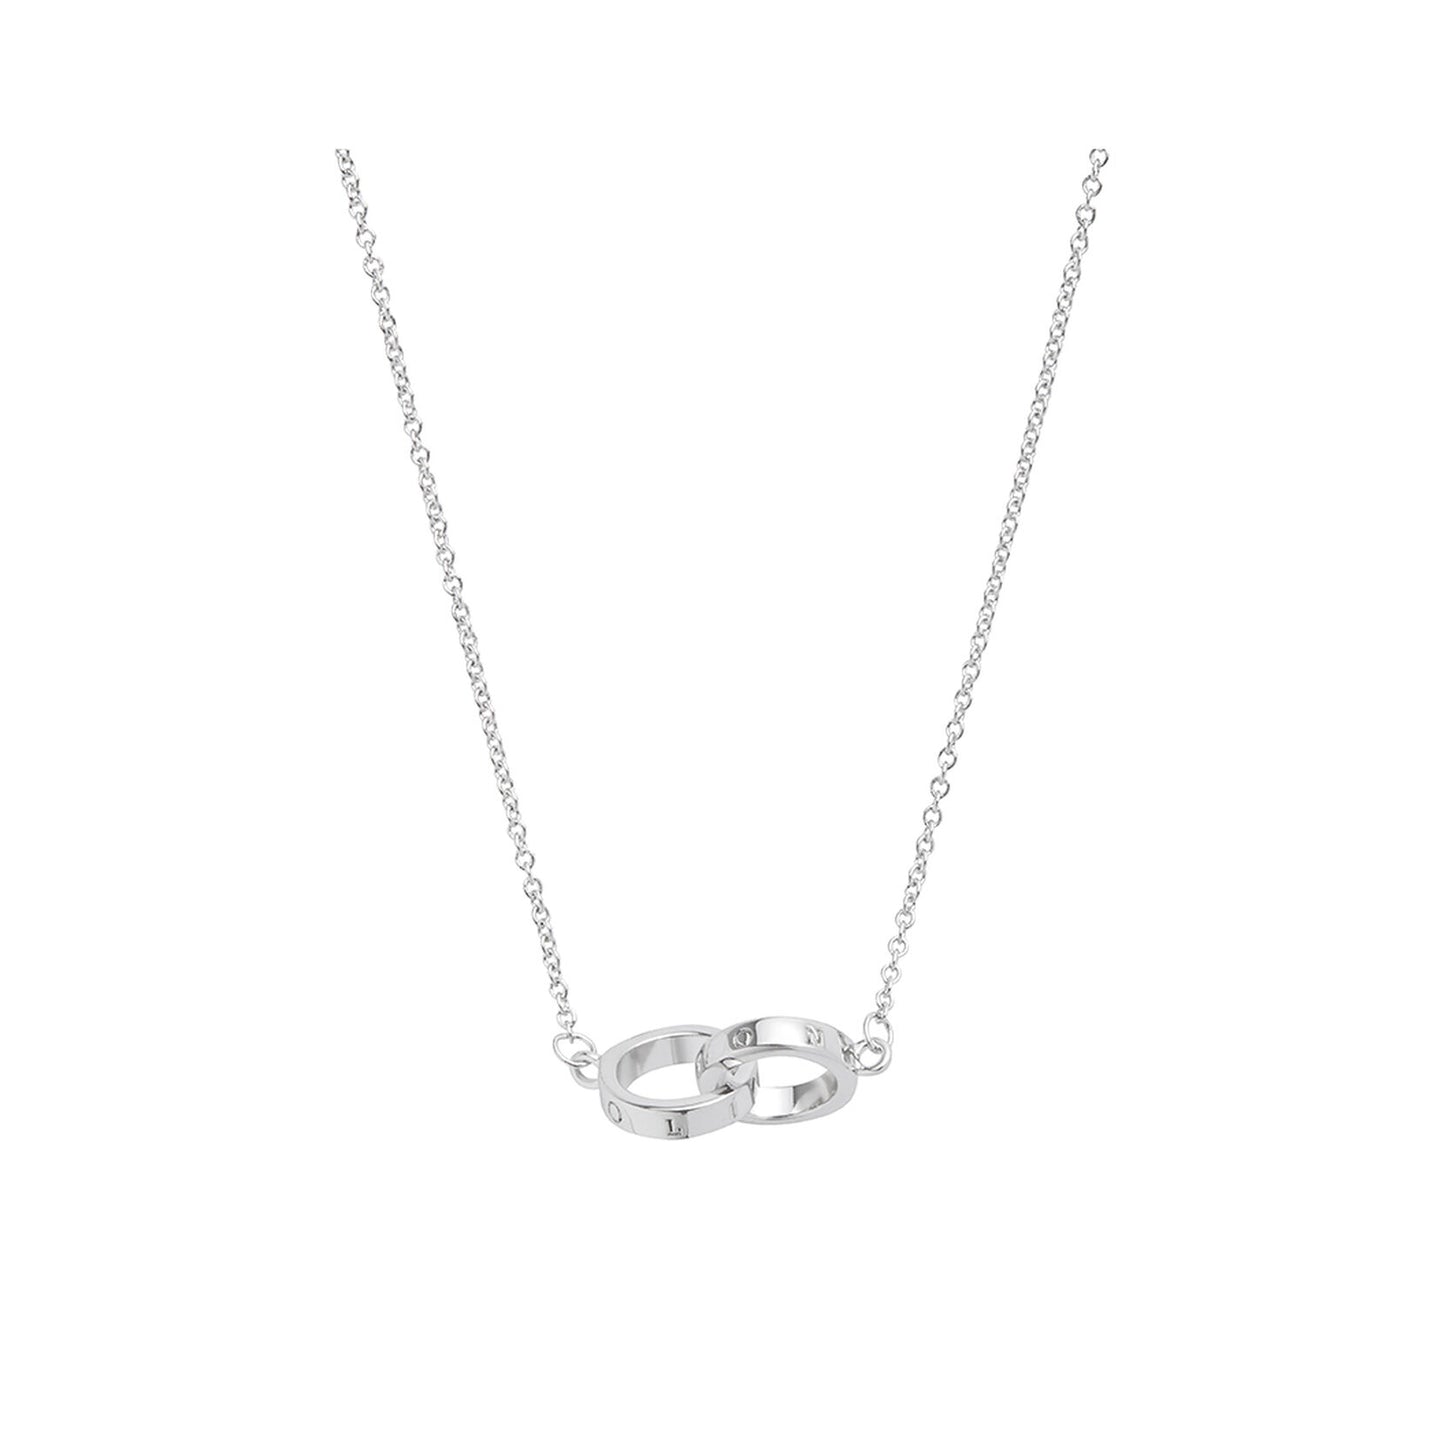 Interlink Necklace - Silver